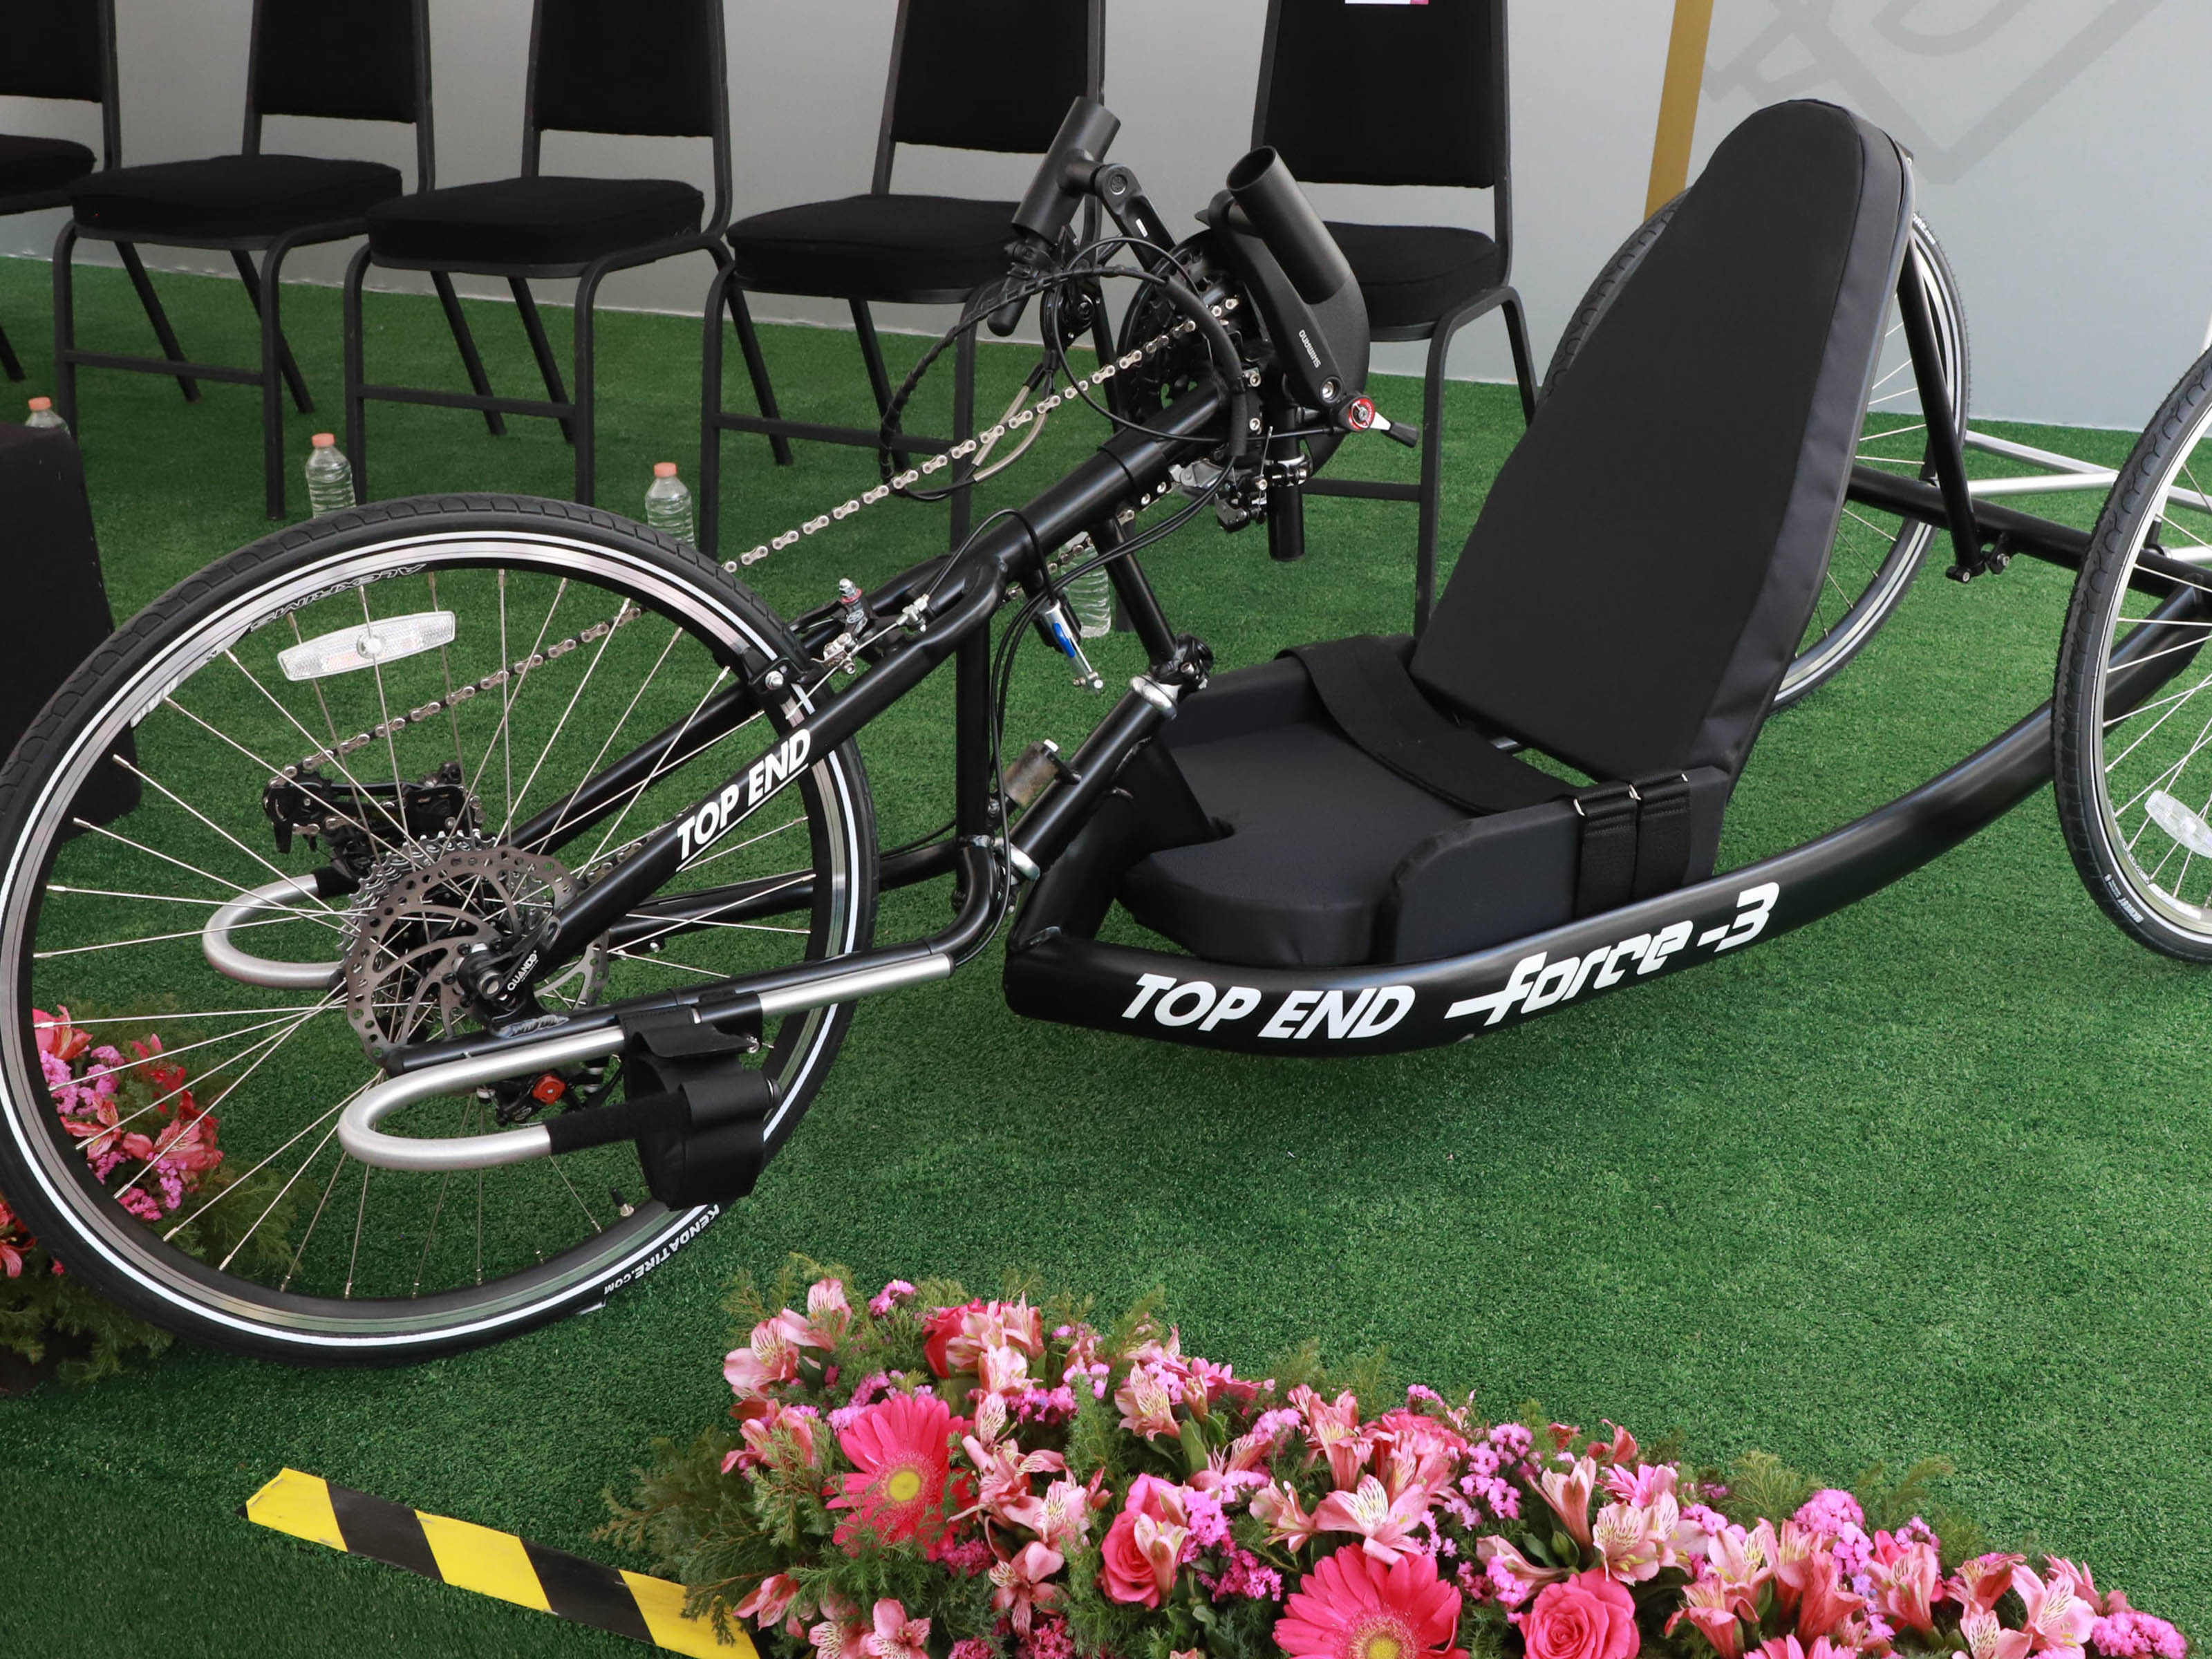 Entregan SEDIF y Salud bicicletas de mano a deportistas de alto rendimiento con discapacidad